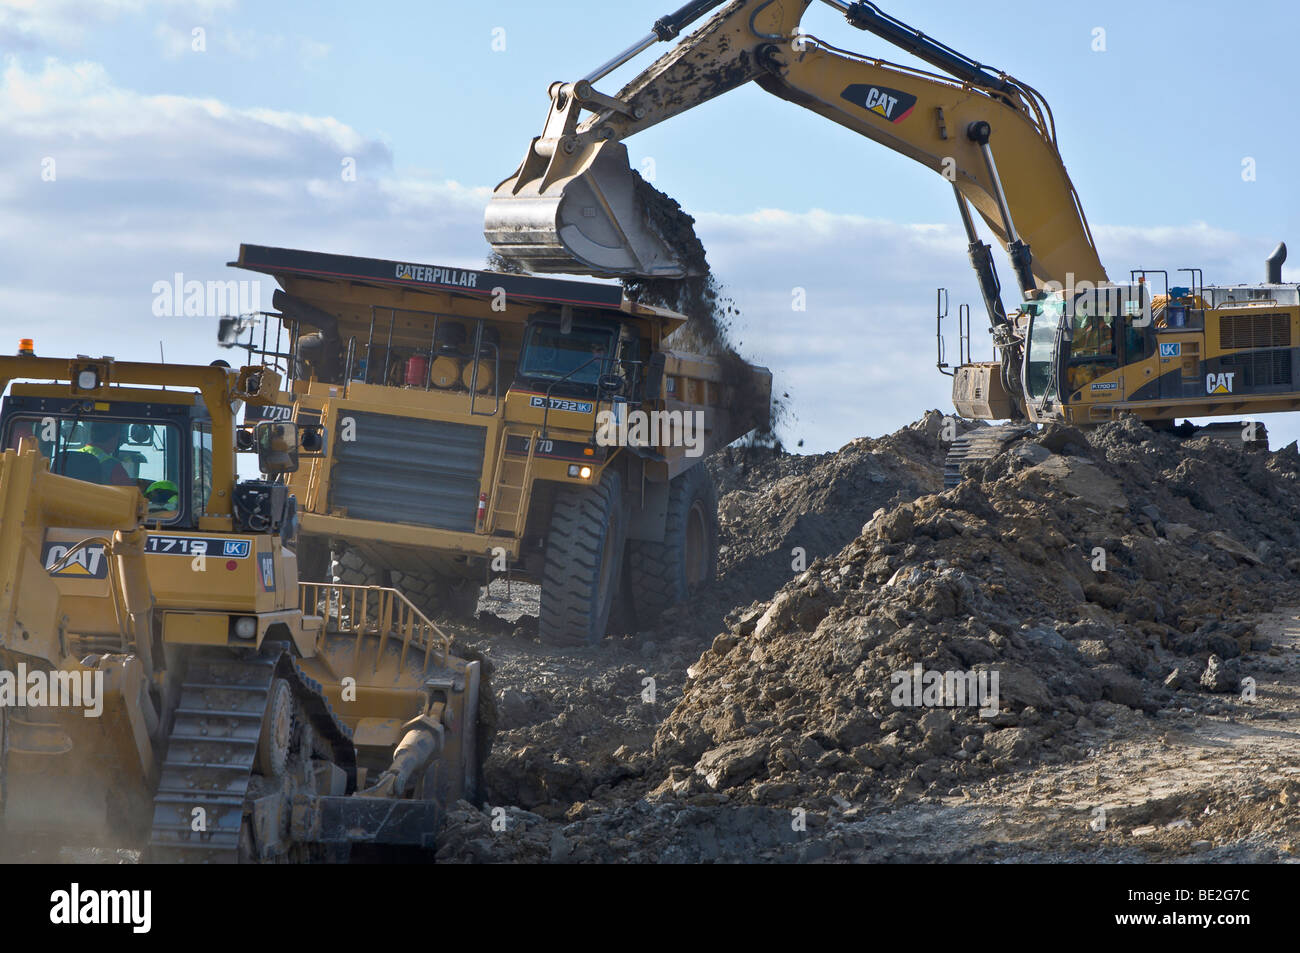 Grandi attrezzature per macchine movimento terra a cielo aperto del carbone sito minerario, Caterpillar camion, superficie di miniere di carbone. Restauro del Paesaggio dopo l'estrazione. Foto Stock